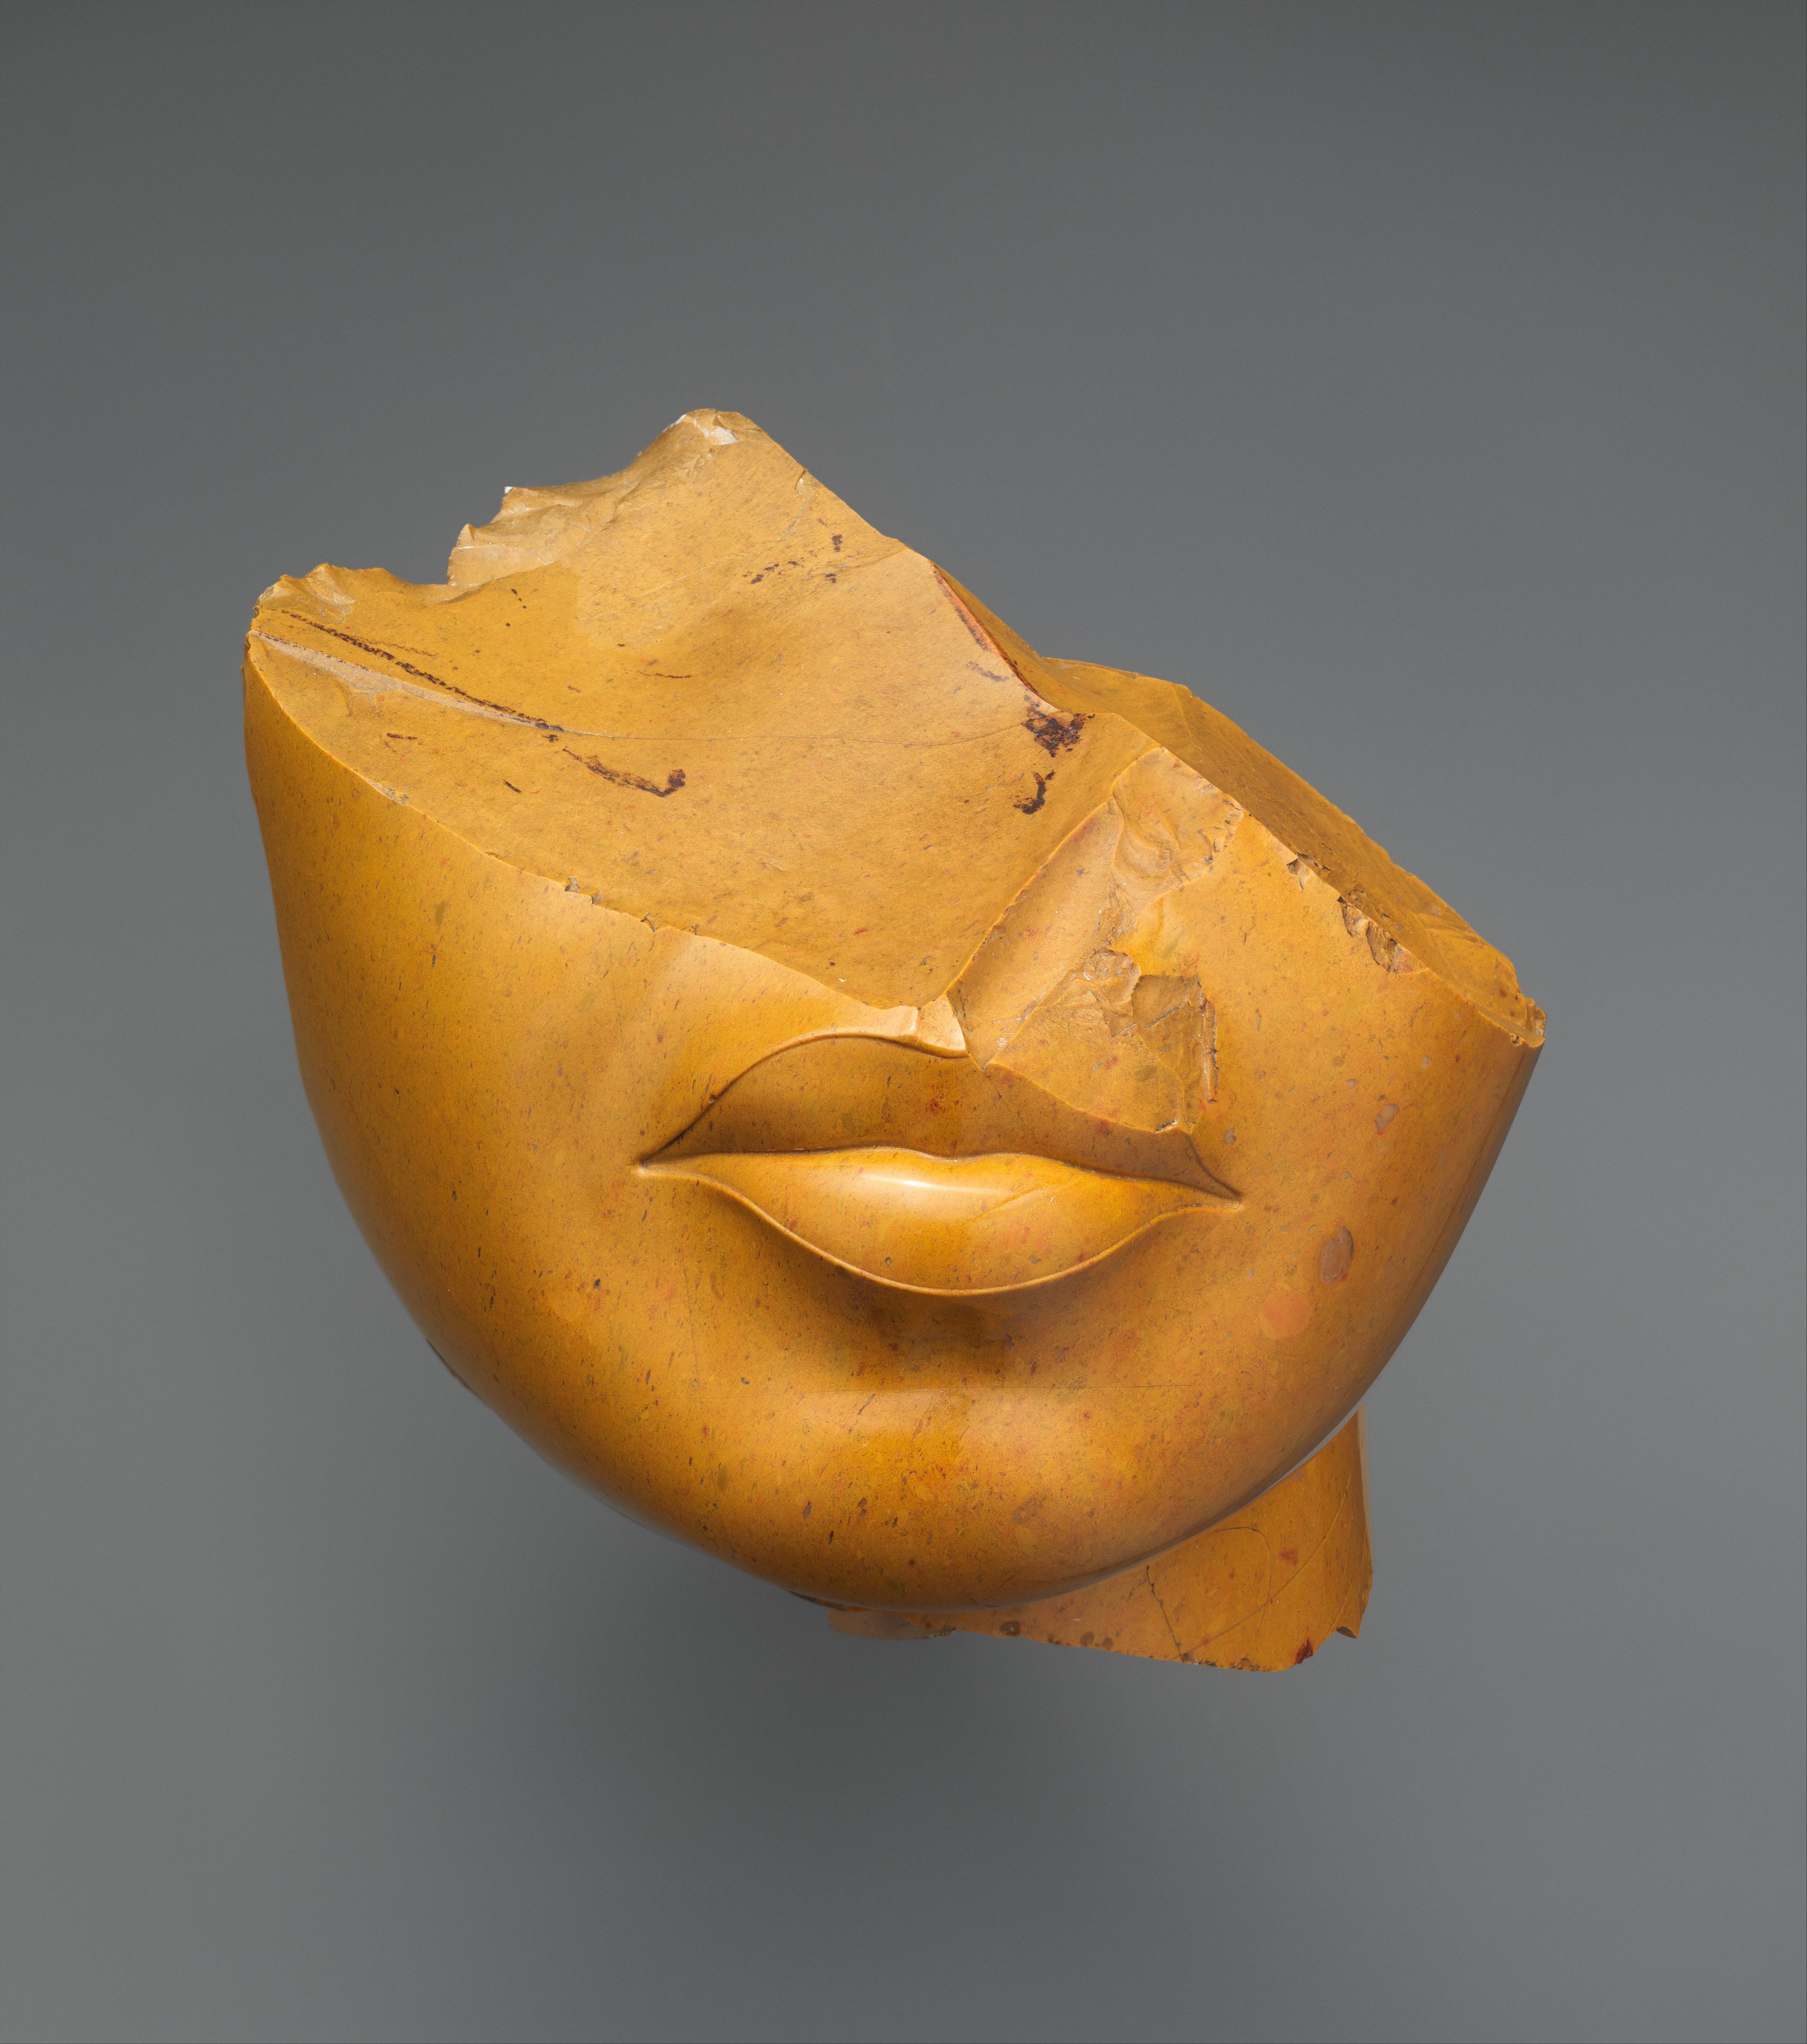 Fragmento del rostro de una reina by Artista anónimo  - ca. 1353 - 1336 d.C. - 13 x 12,5 x 12,5 cm Museo Metropolitano de Arte